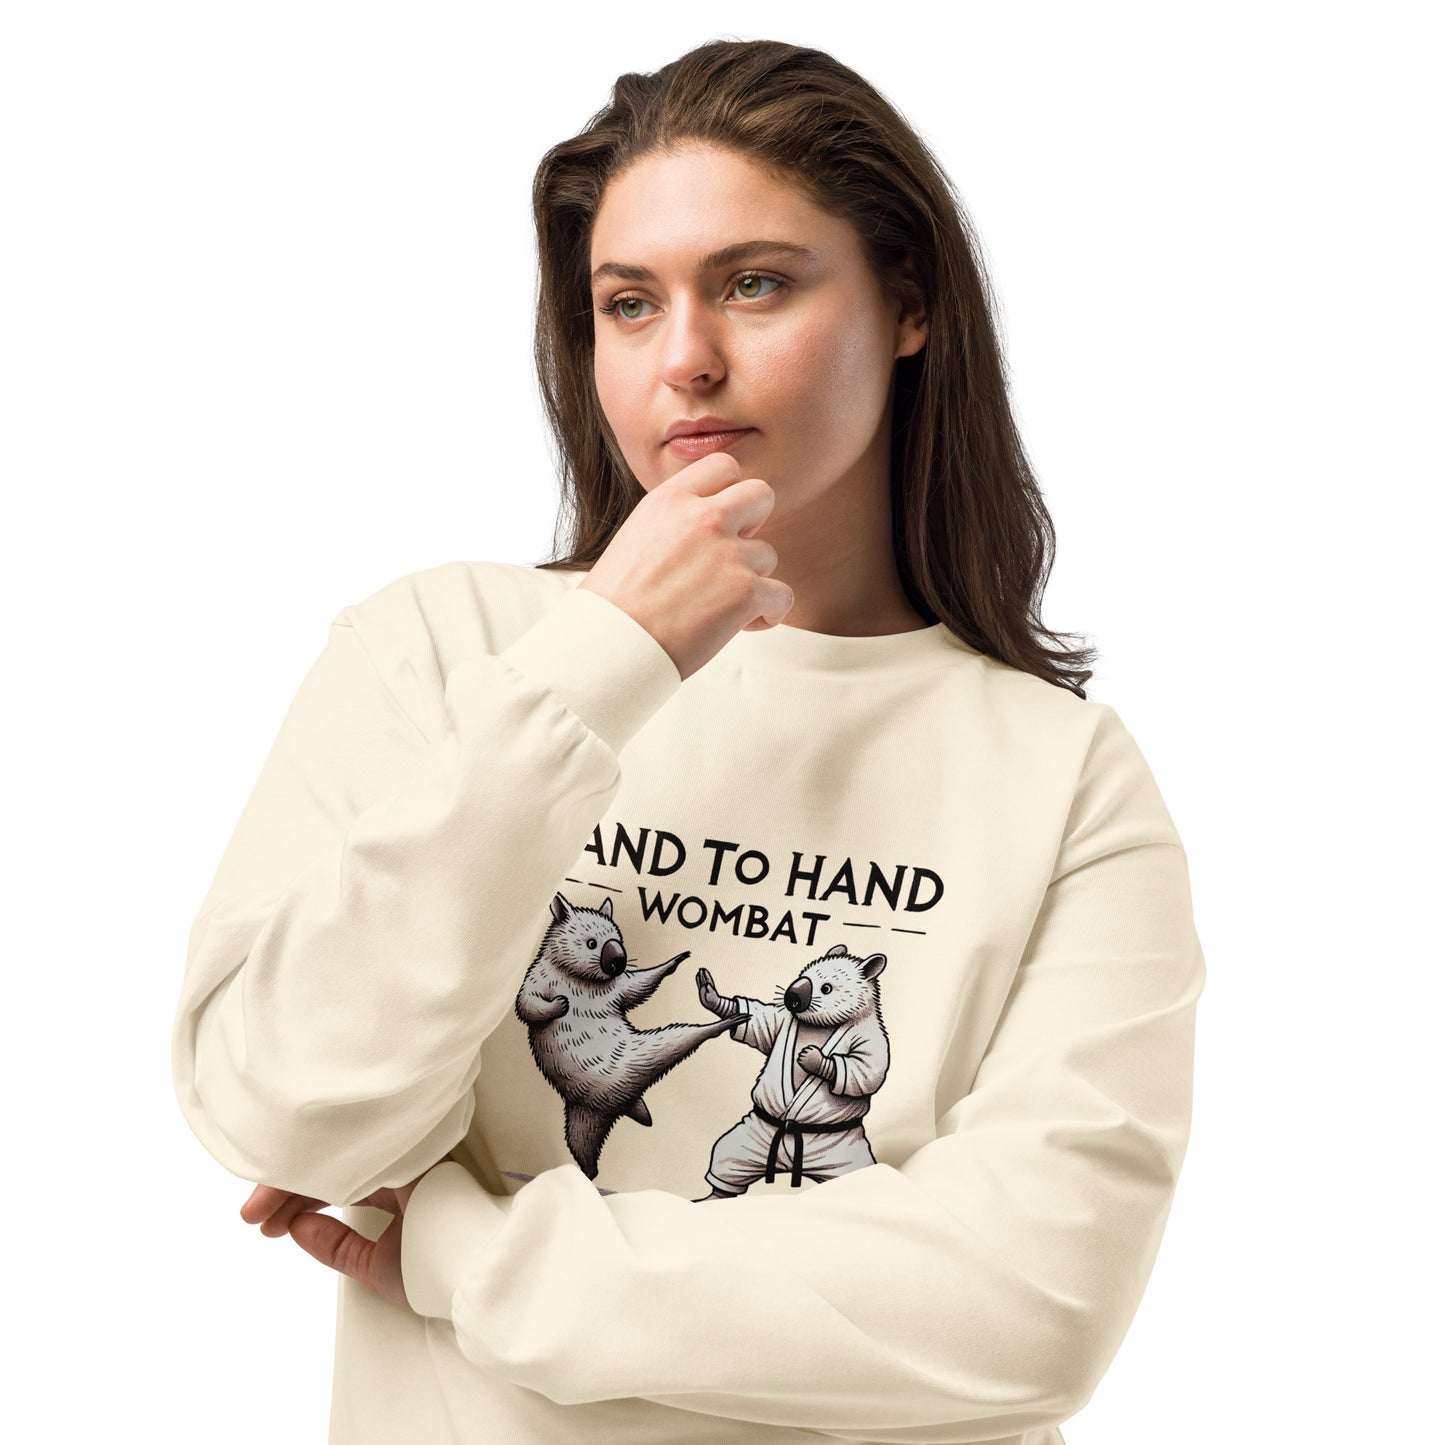 Hand to Hand Wombat - Premium Heavyweight Long Sleeve Shirt